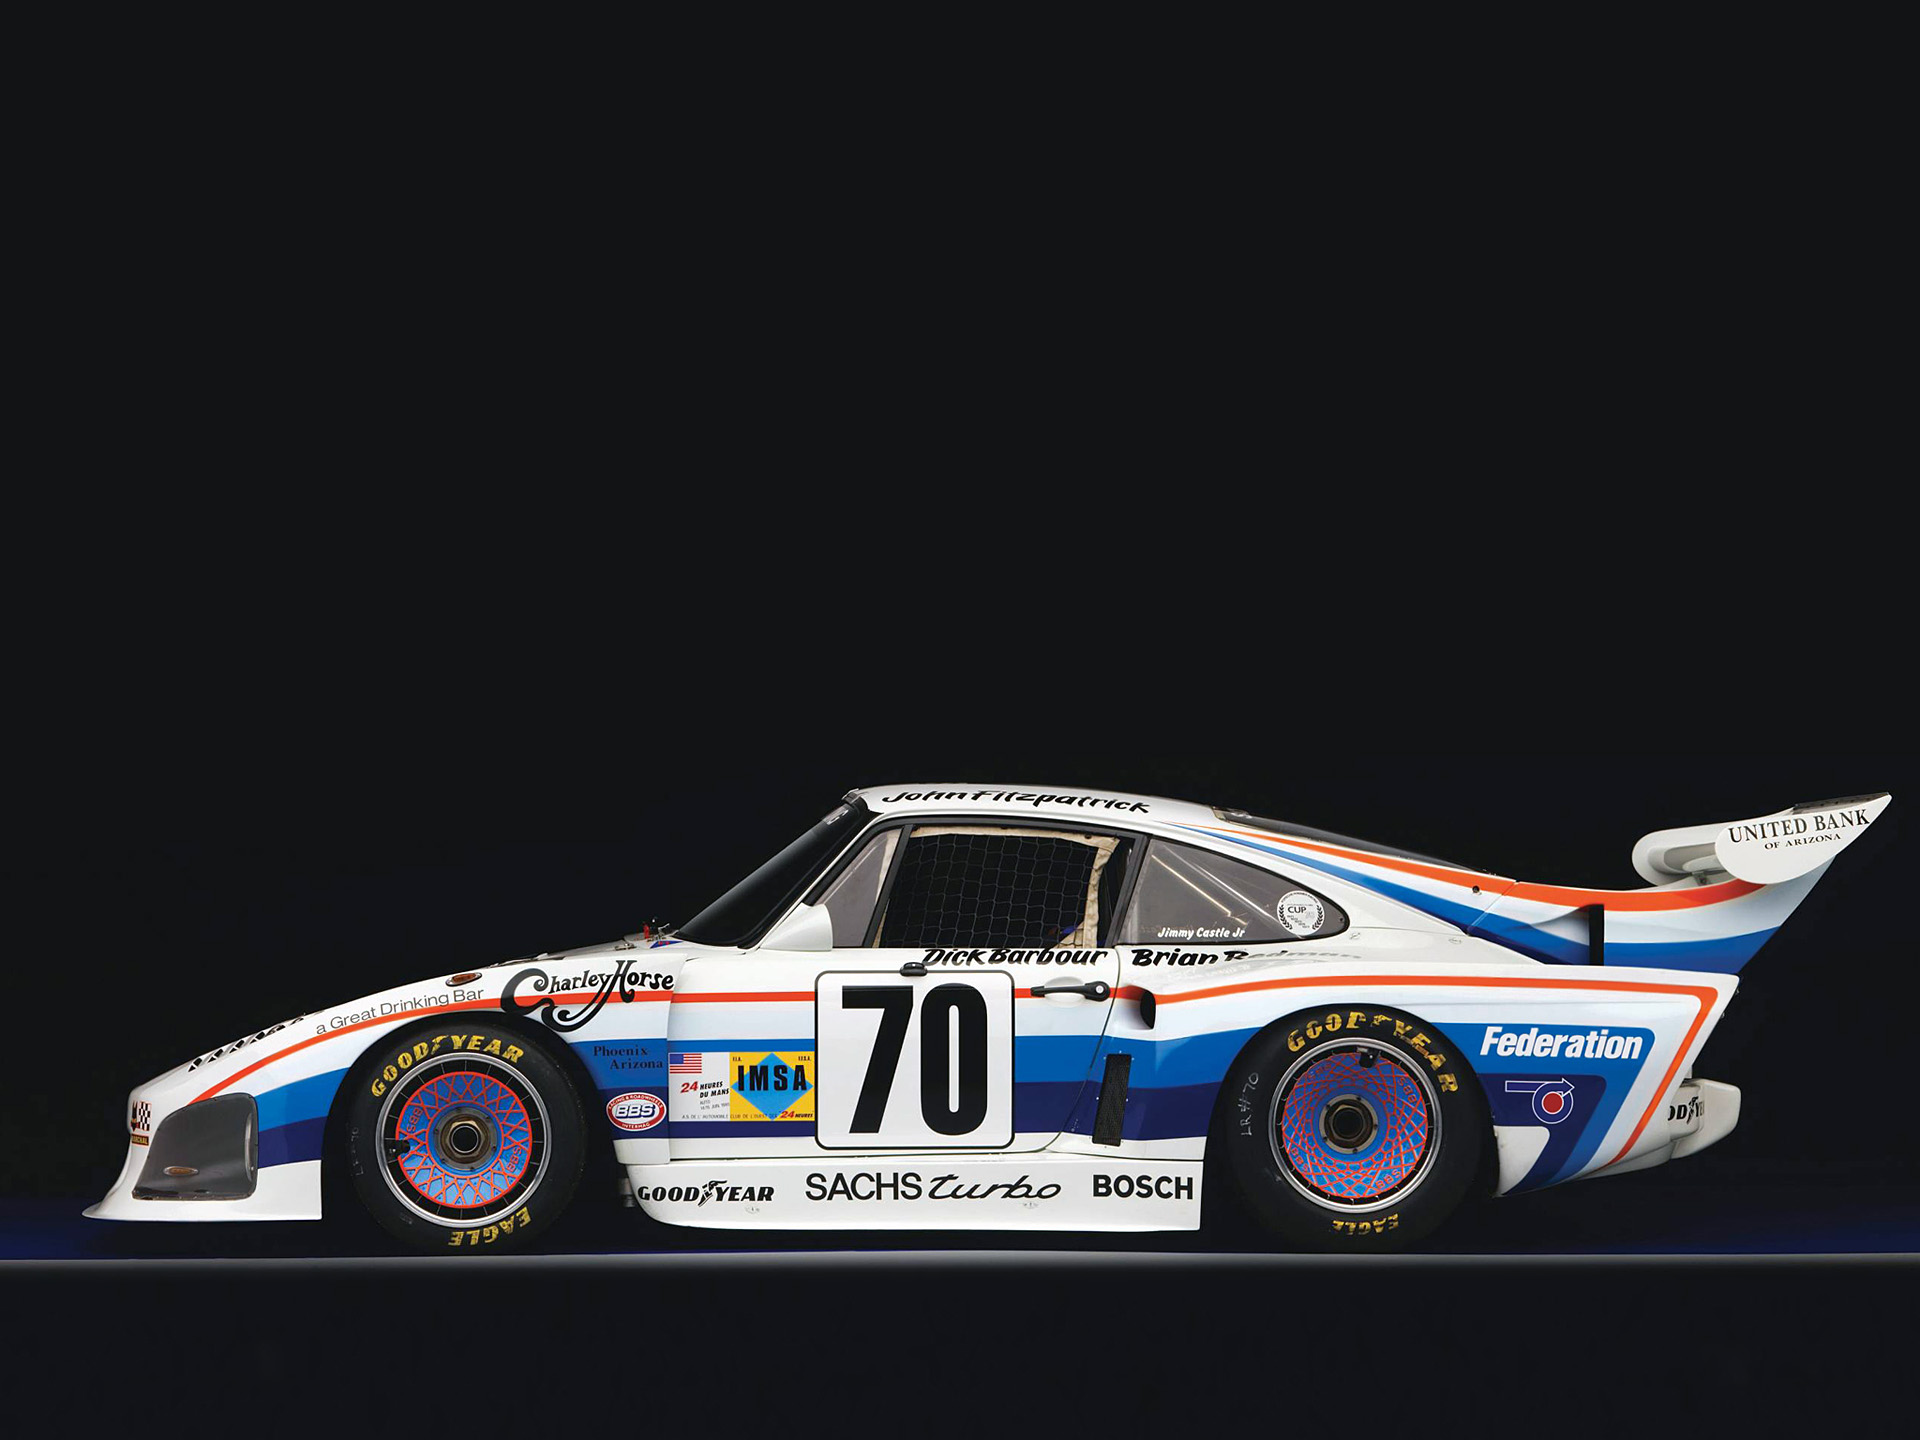  1979 Porsche 935 K3 Wallpaper.